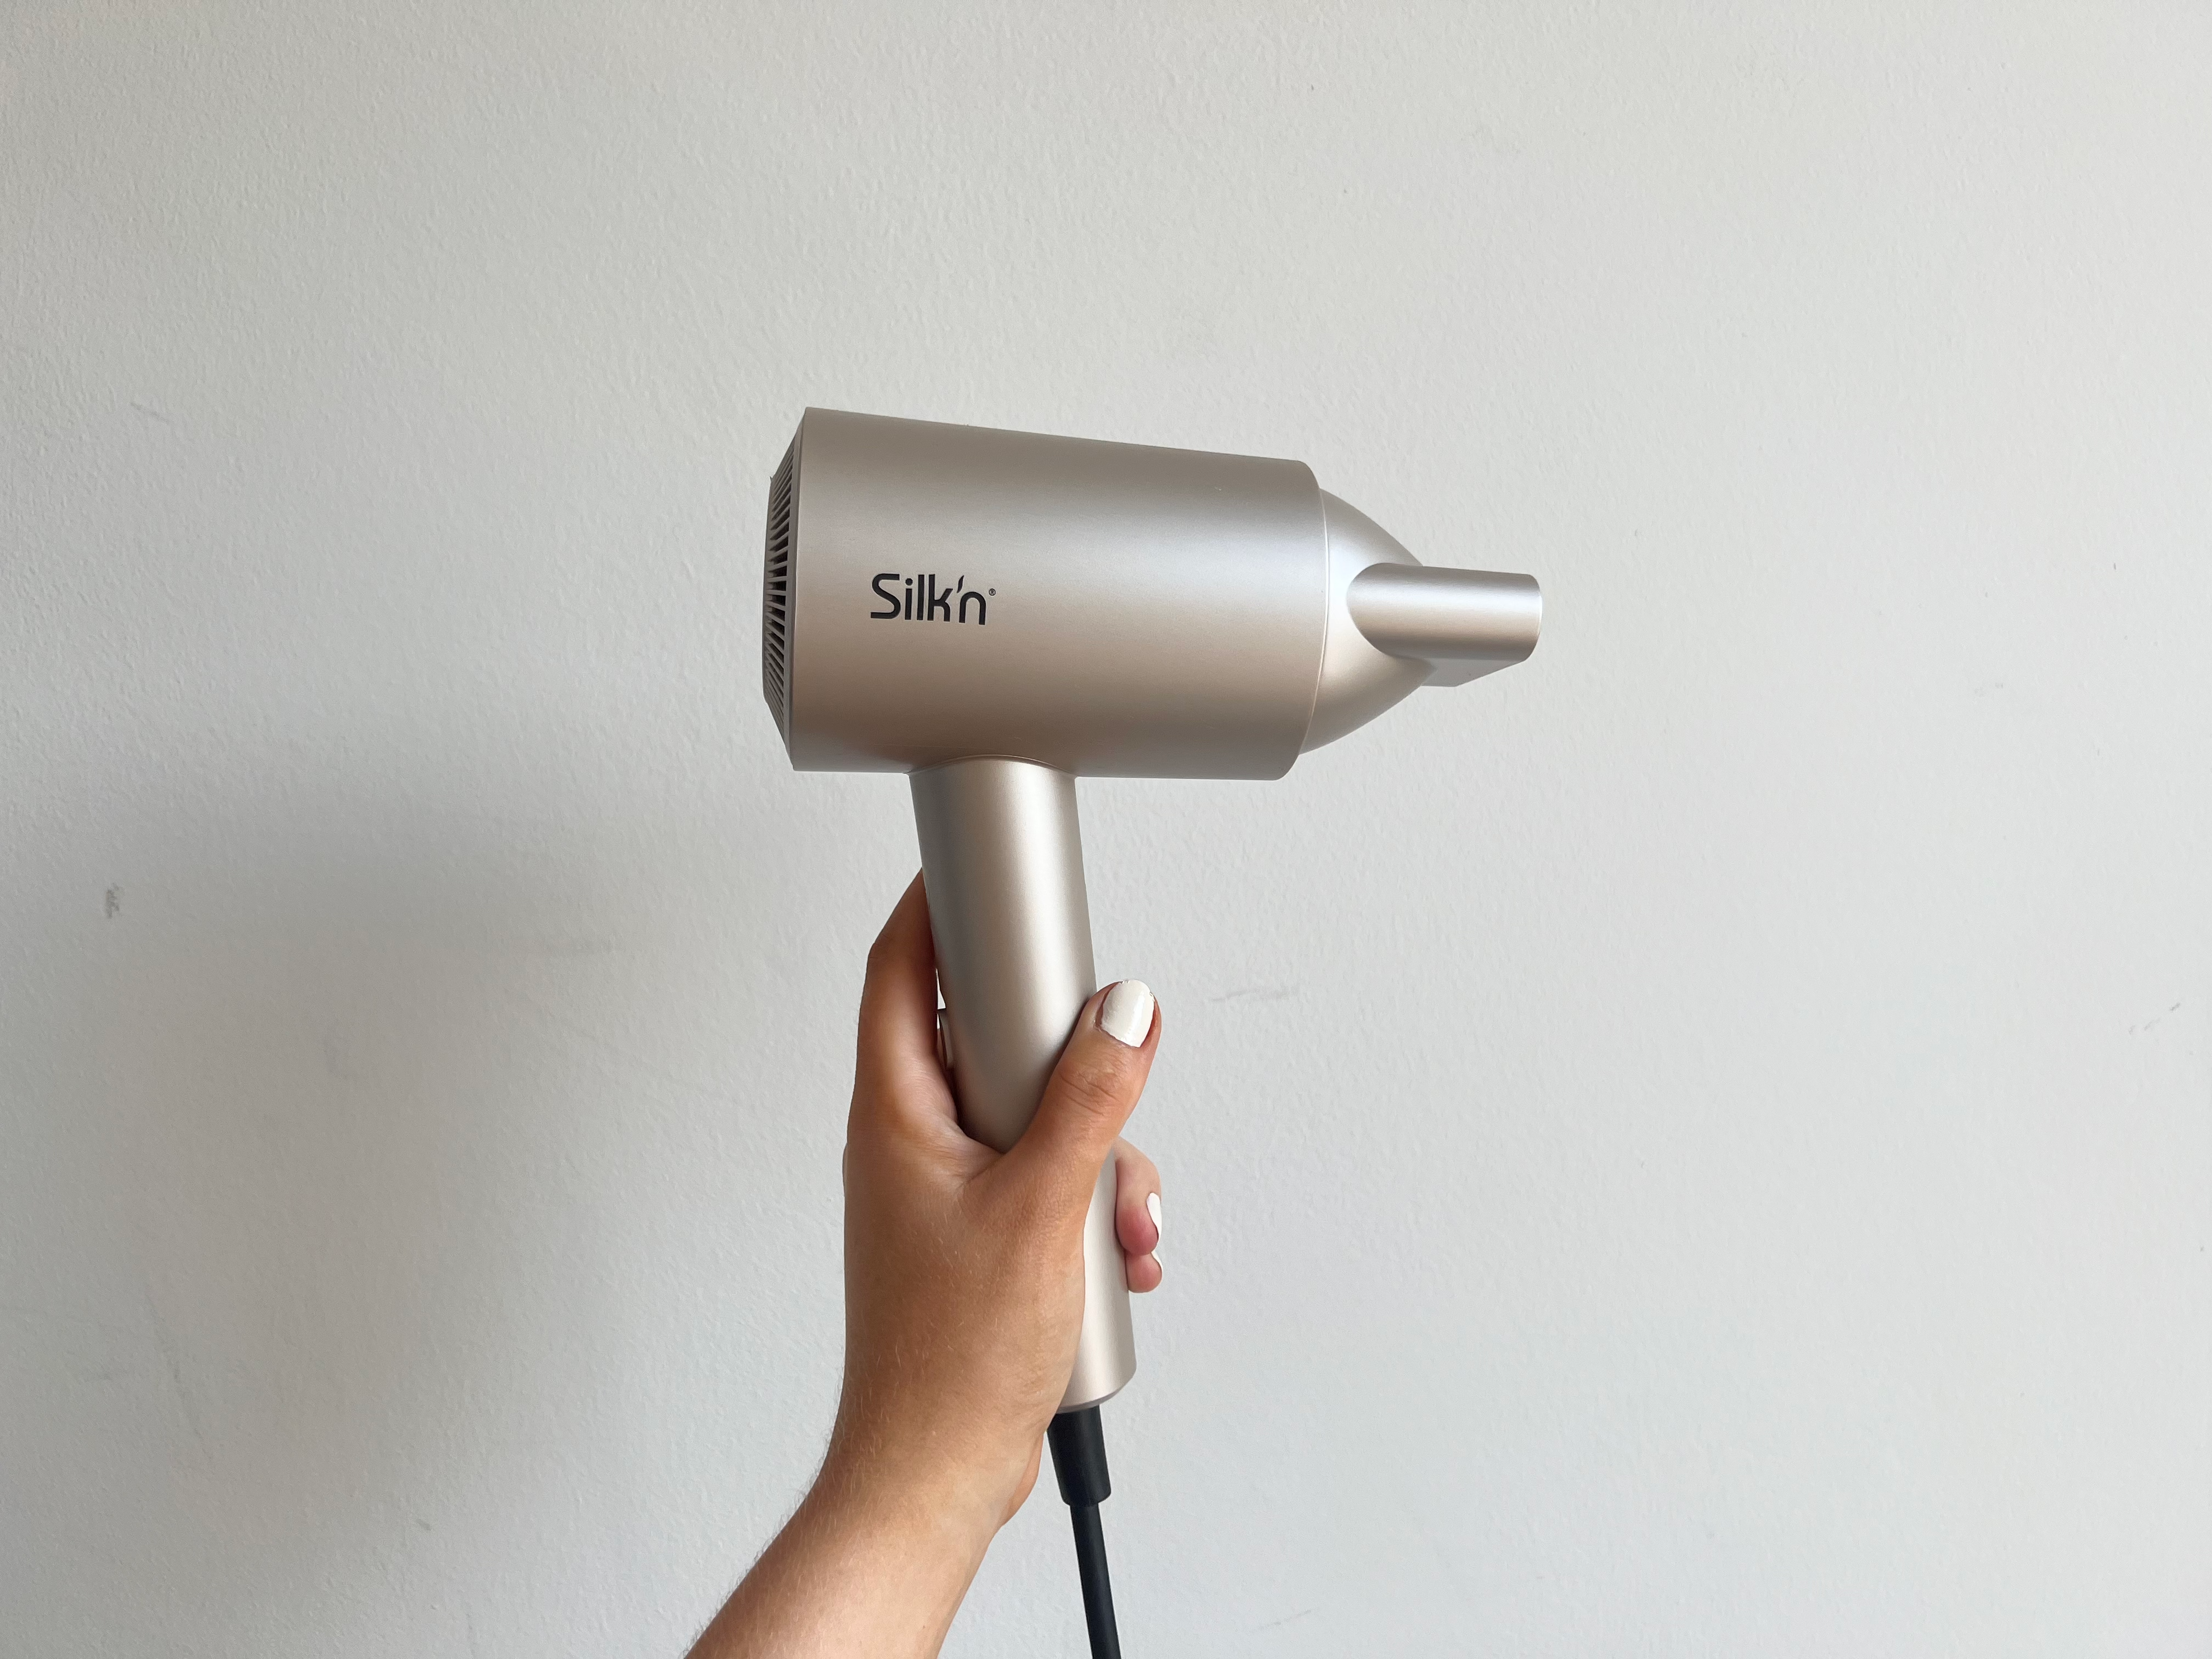 Silk’n silky air pro review